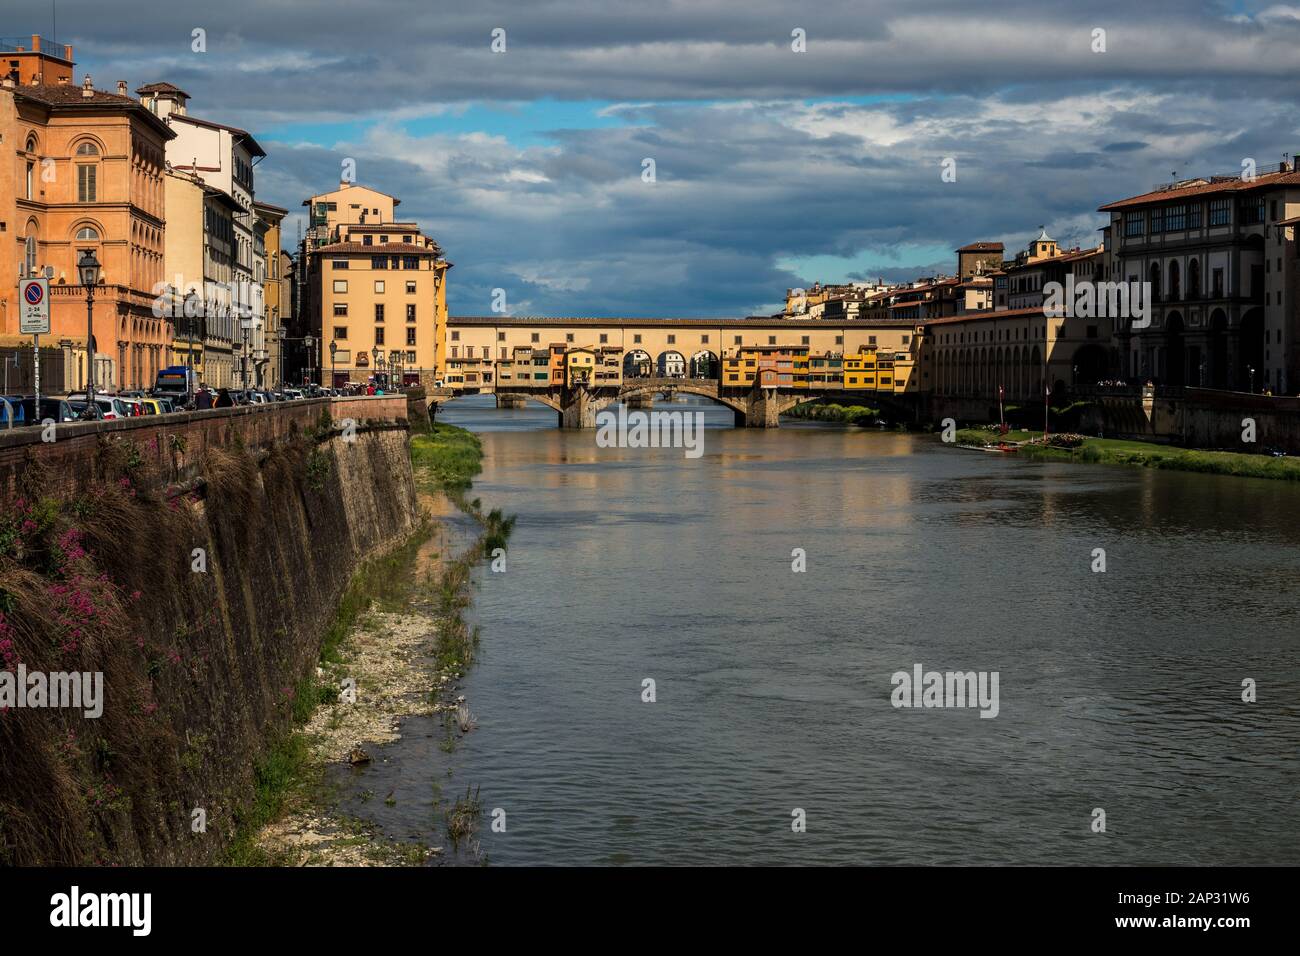 Ponte Vecchio rivière voûtée médiévale pont reliant la galerie des Offices au Palais Pitti. Florence Italie Banque D'Images